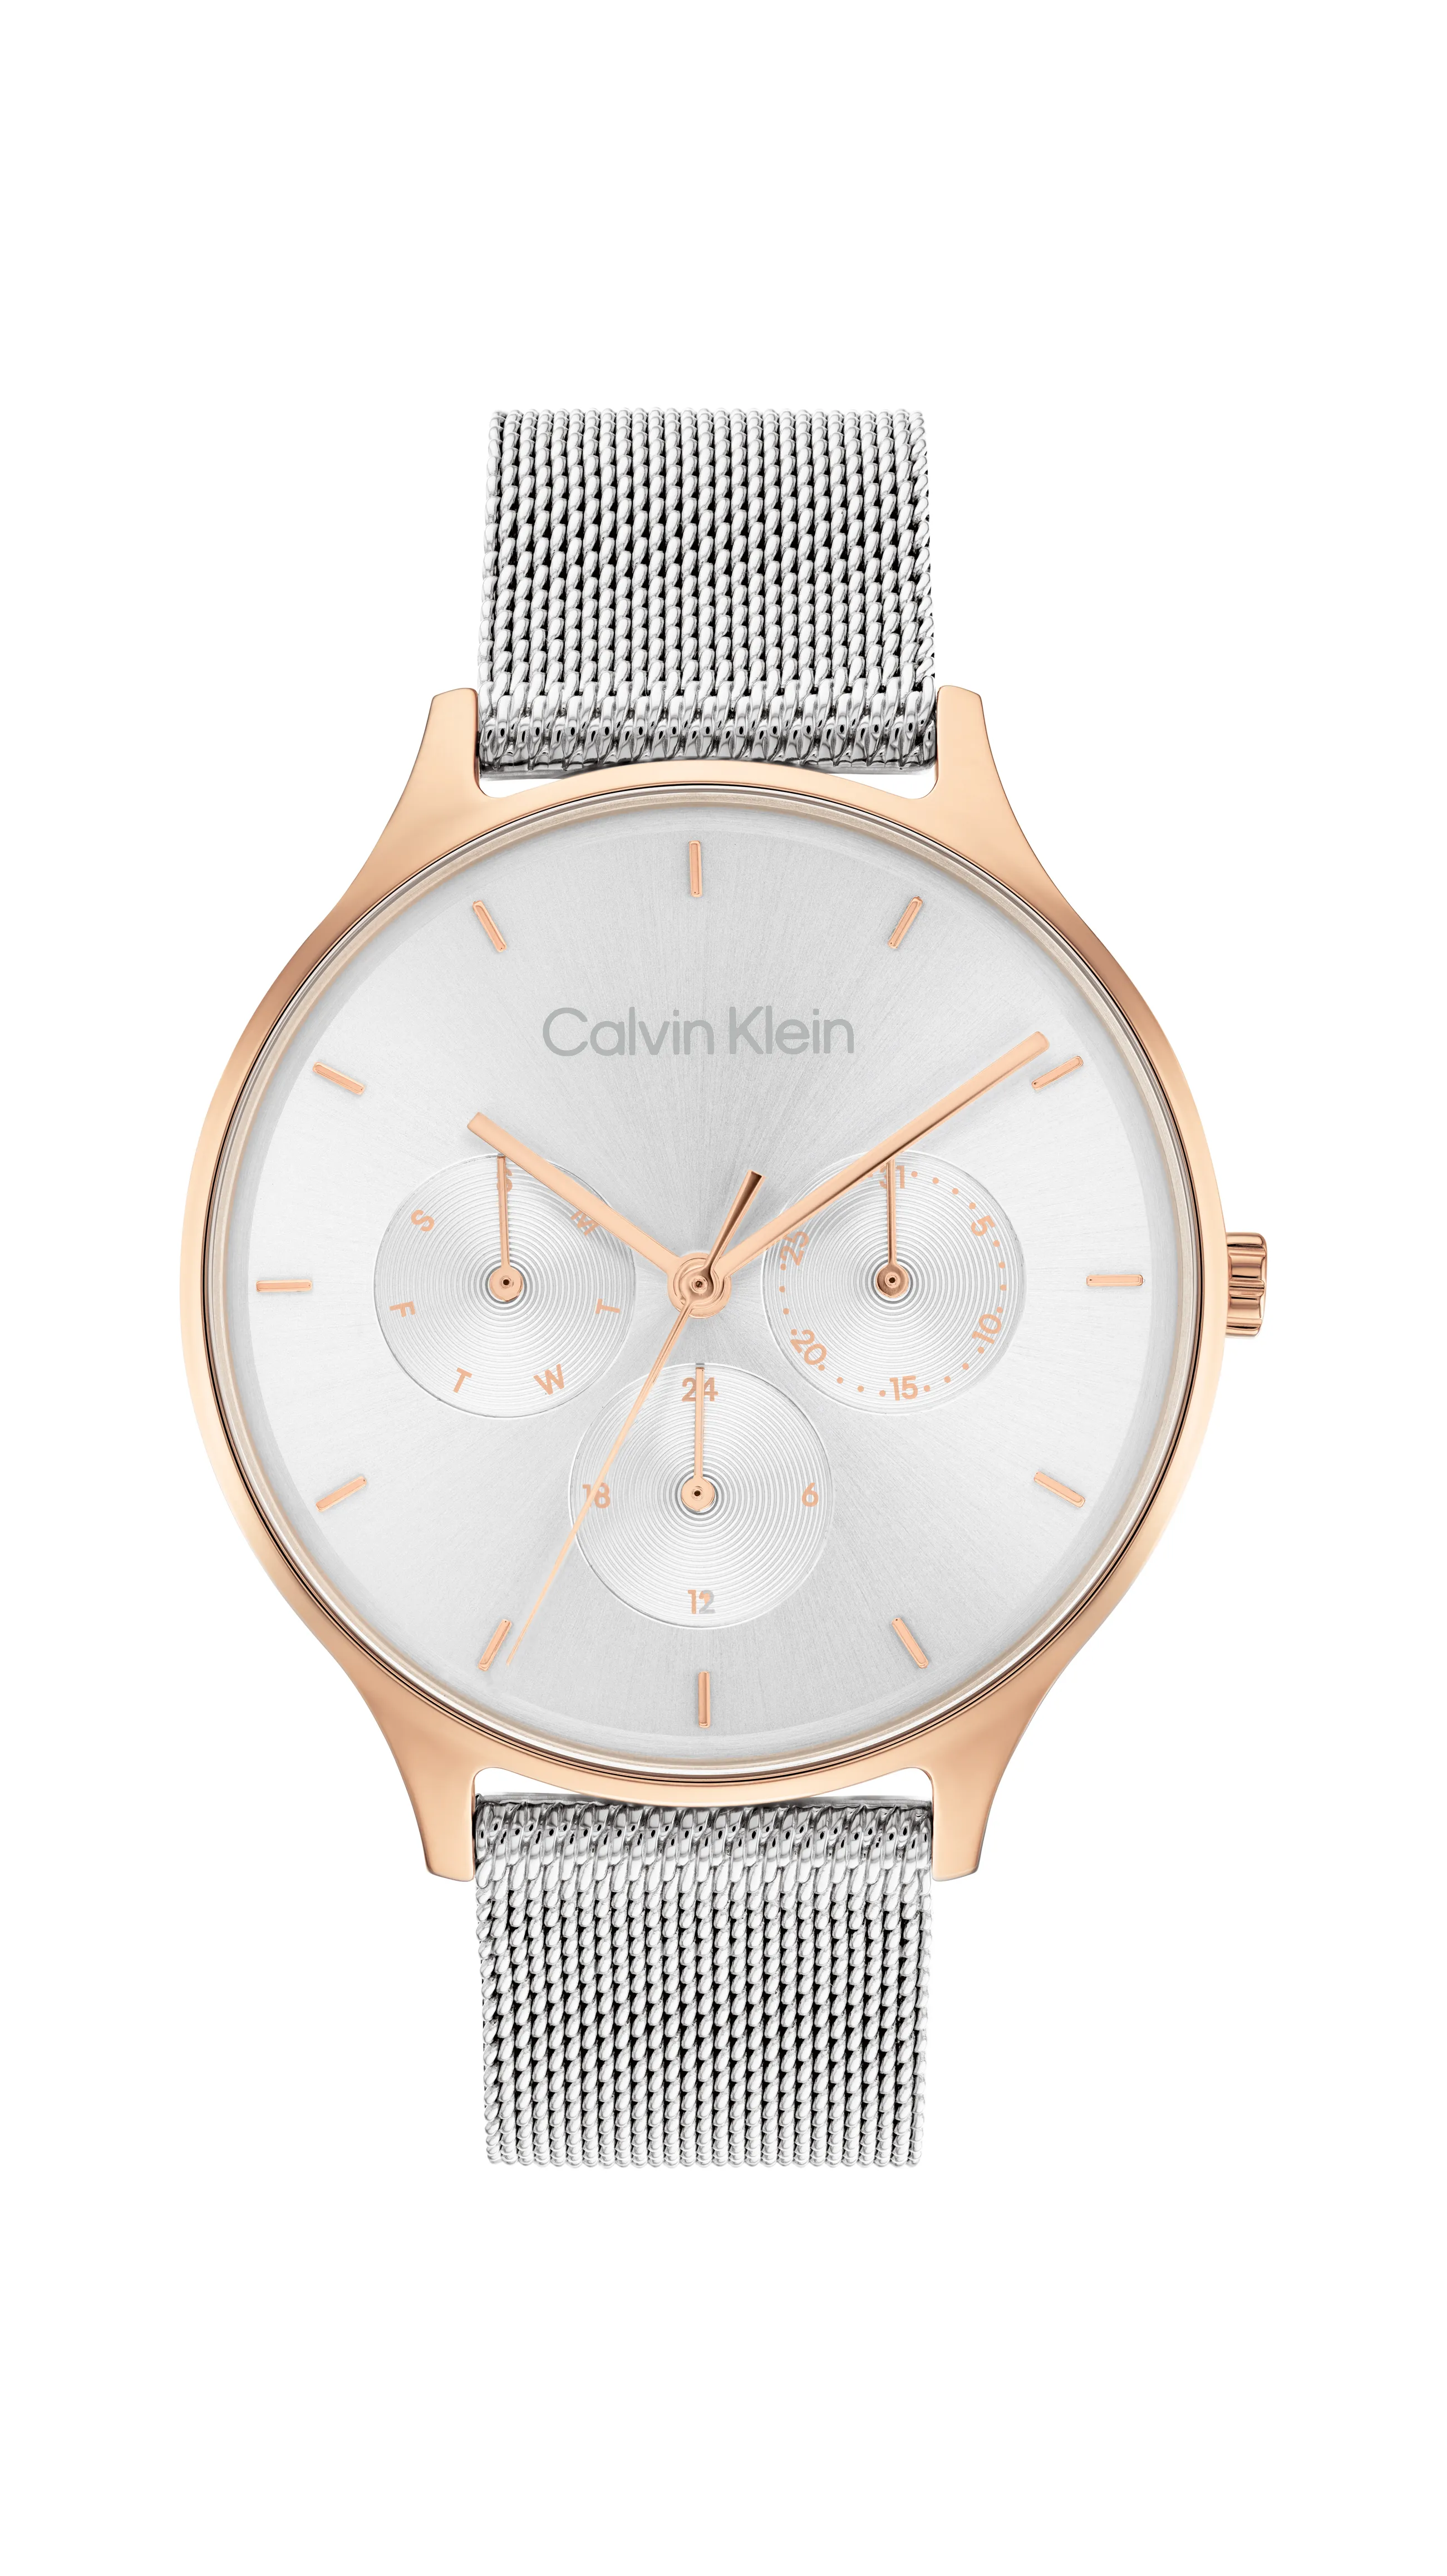 Calvin Klein abre loja dedicada a relojoaria e joalharia em Portugal